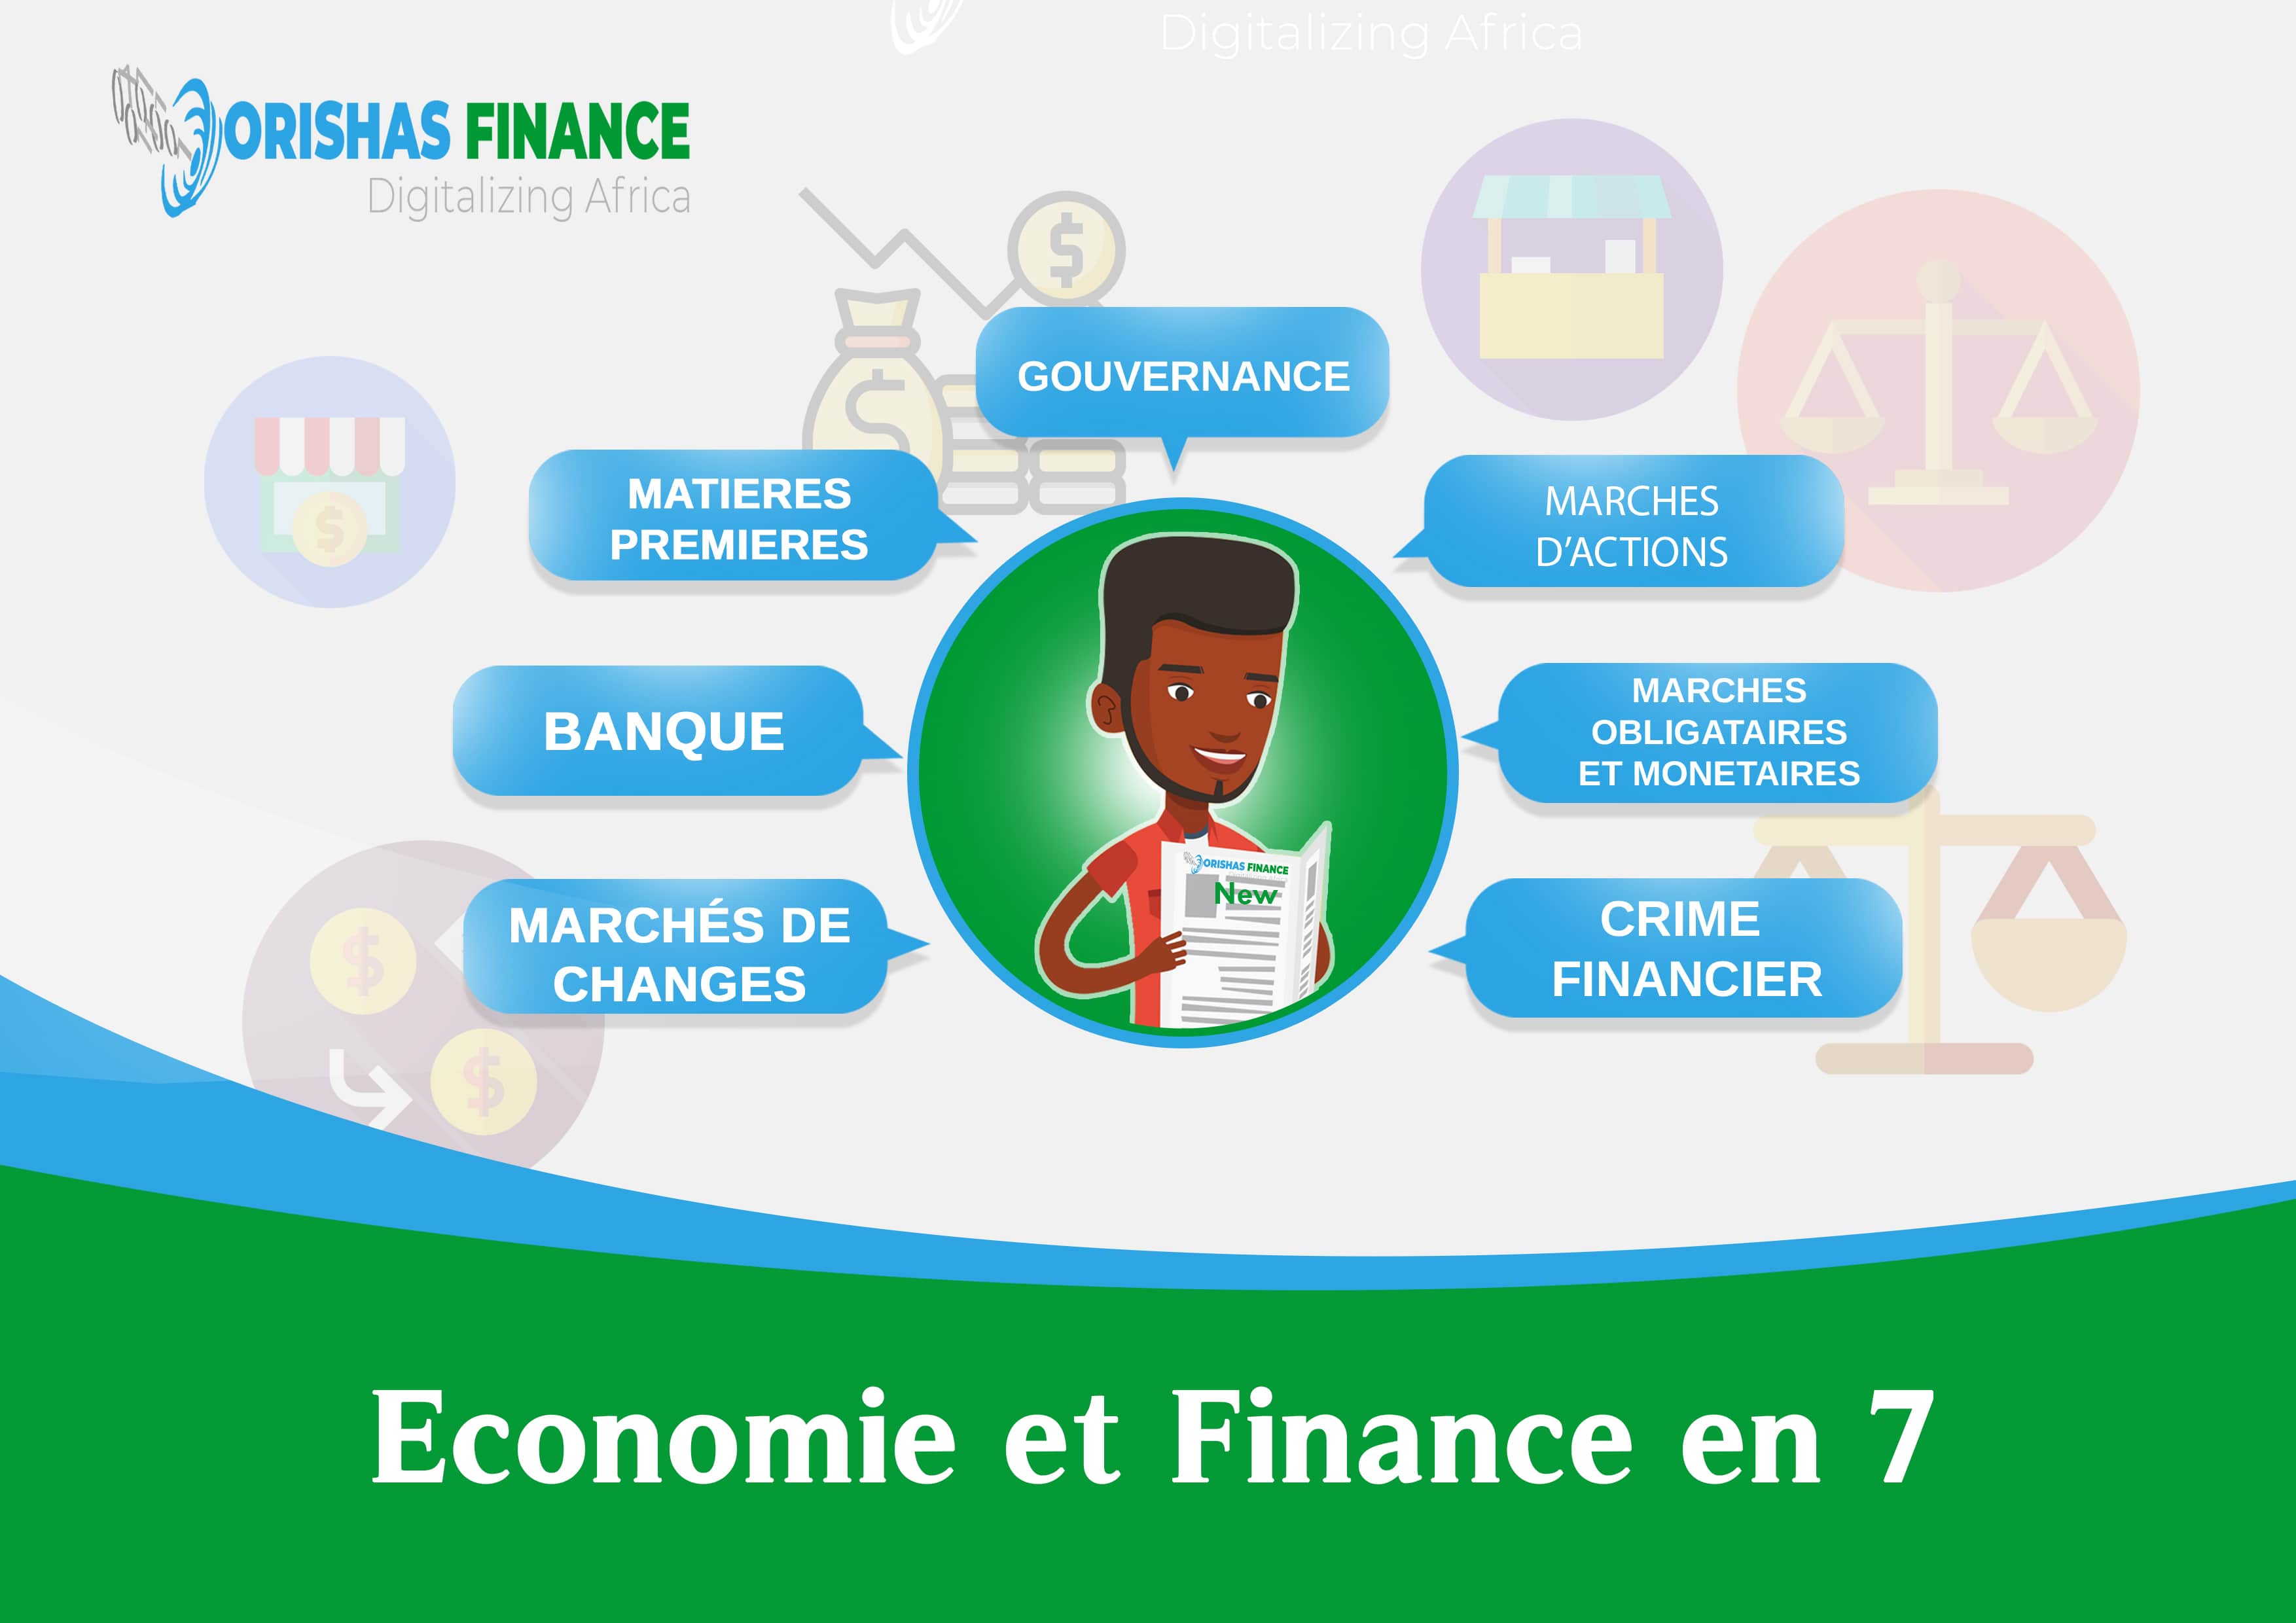  Economie et finance en 7 du 05 au 09 Avril 2021 